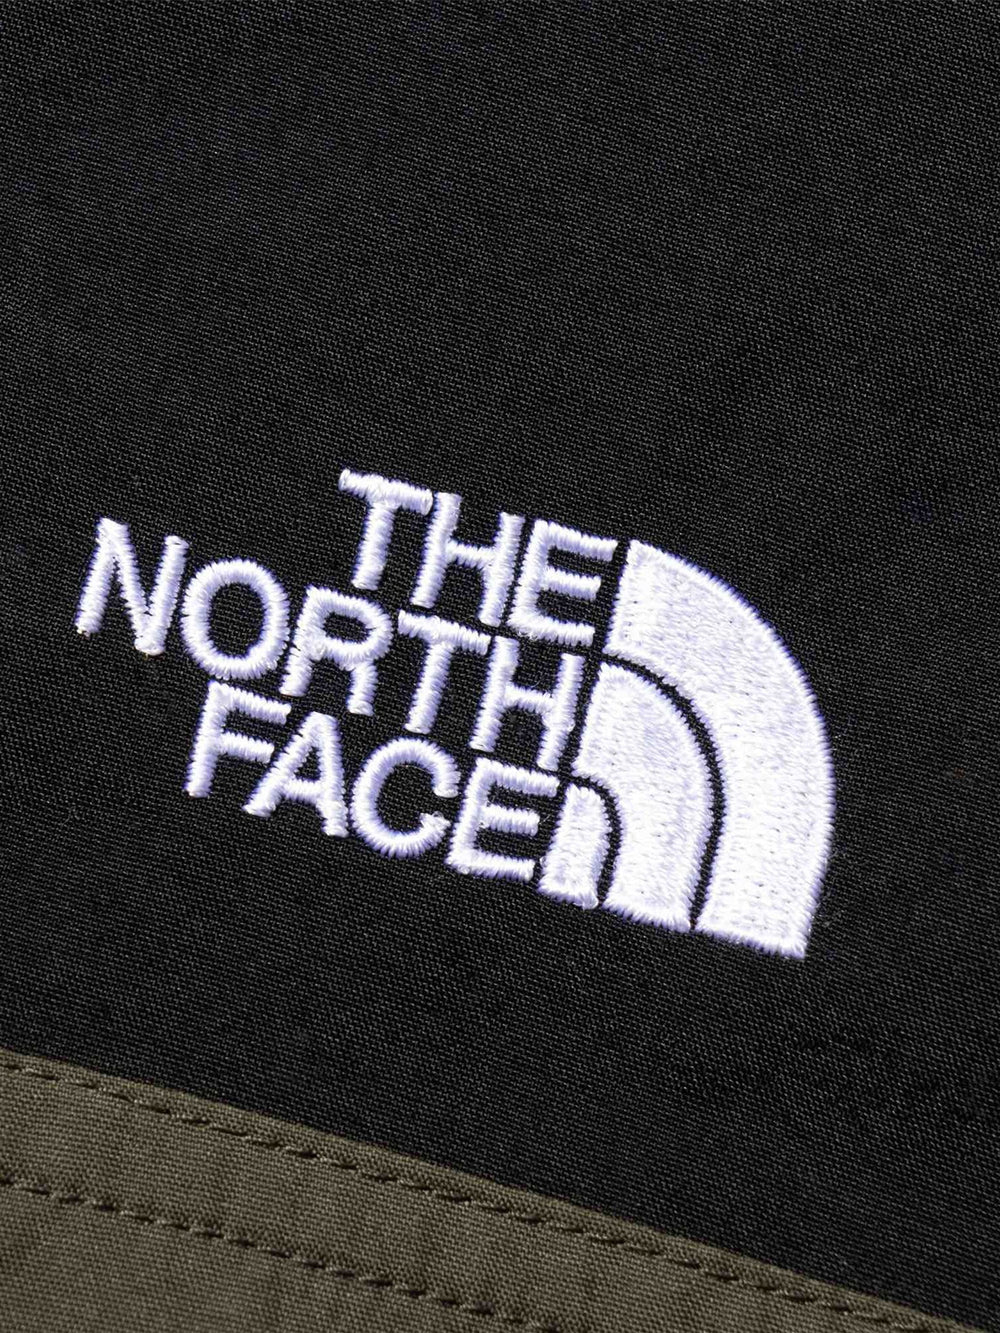 [THE NORTH FACE] コンパクトジャケット / ノースフェイス メンズ アウトドア ウィンドブレーカー フード 長袖 NP72230 23SS - Puravida! プラヴィダ　ヨガ フィットネスショップ